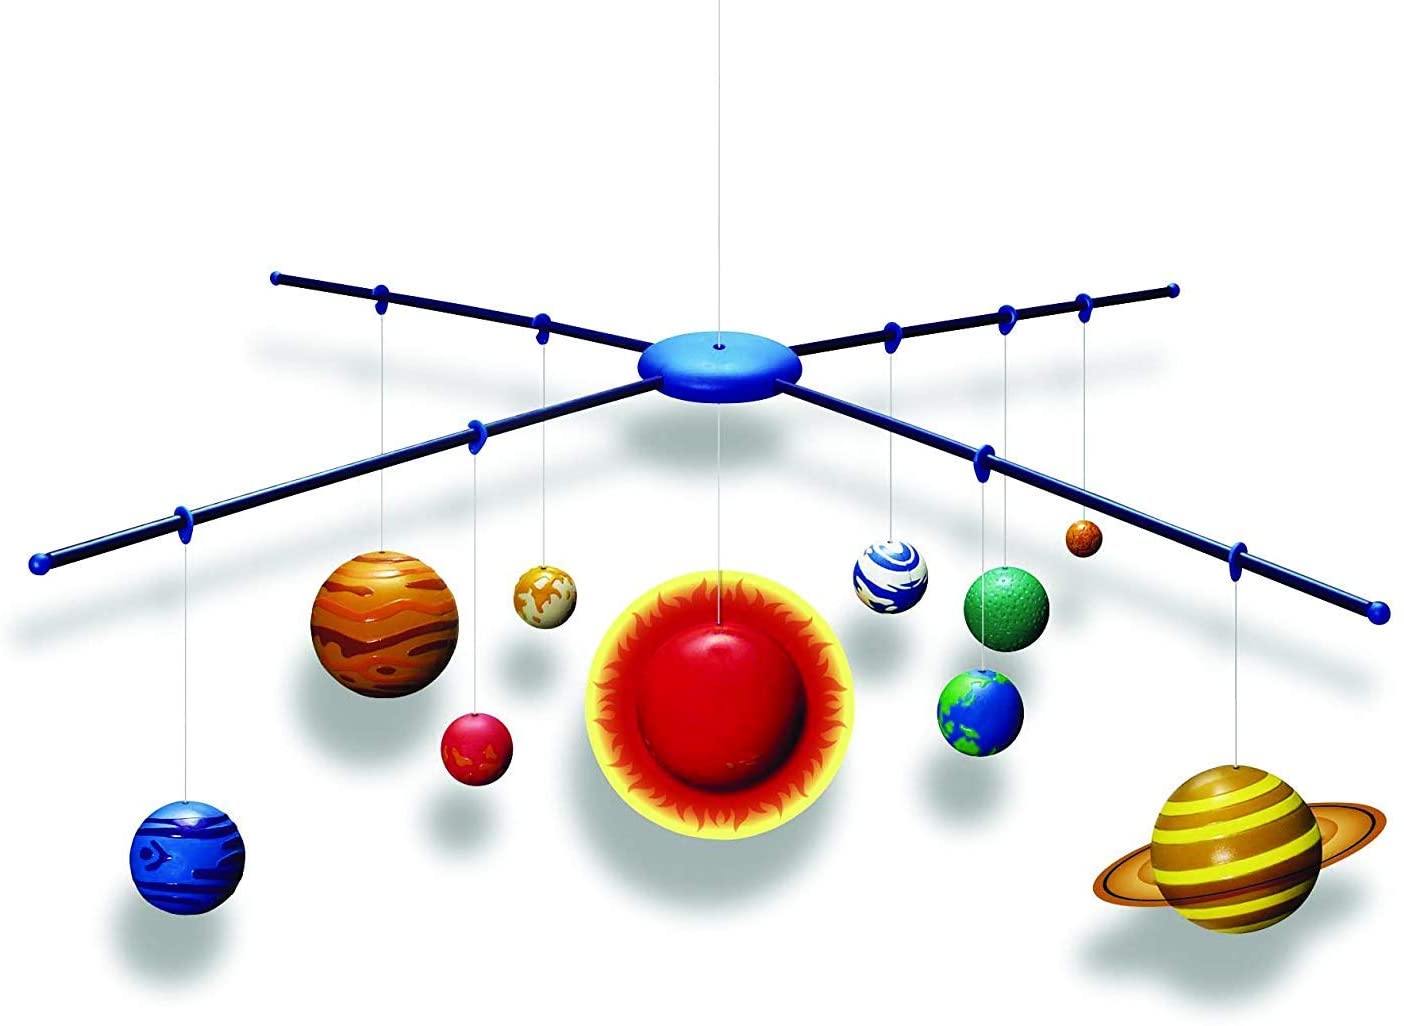 4M Solar System Planetarium